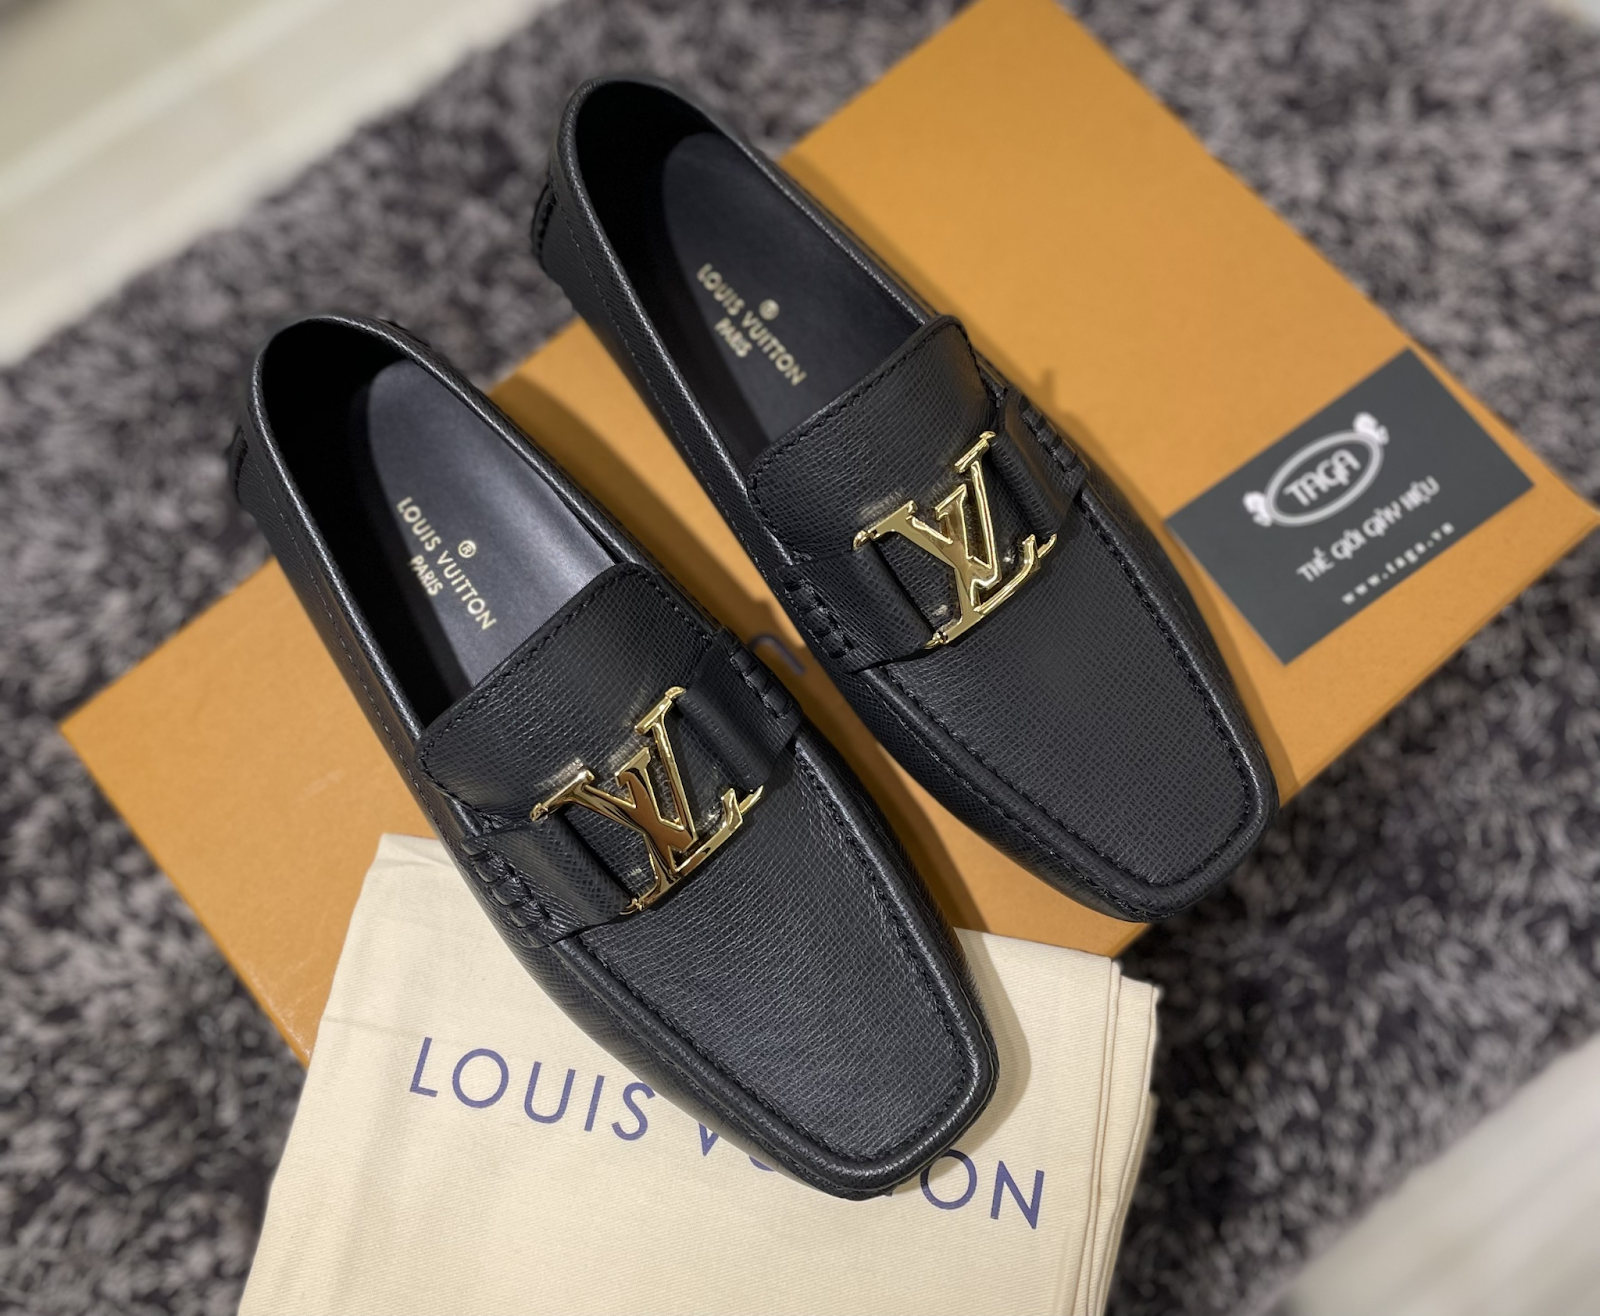 Taga Fashion - địa chỉ bán giày Louis Vuitton authentic uy tín tại HCM